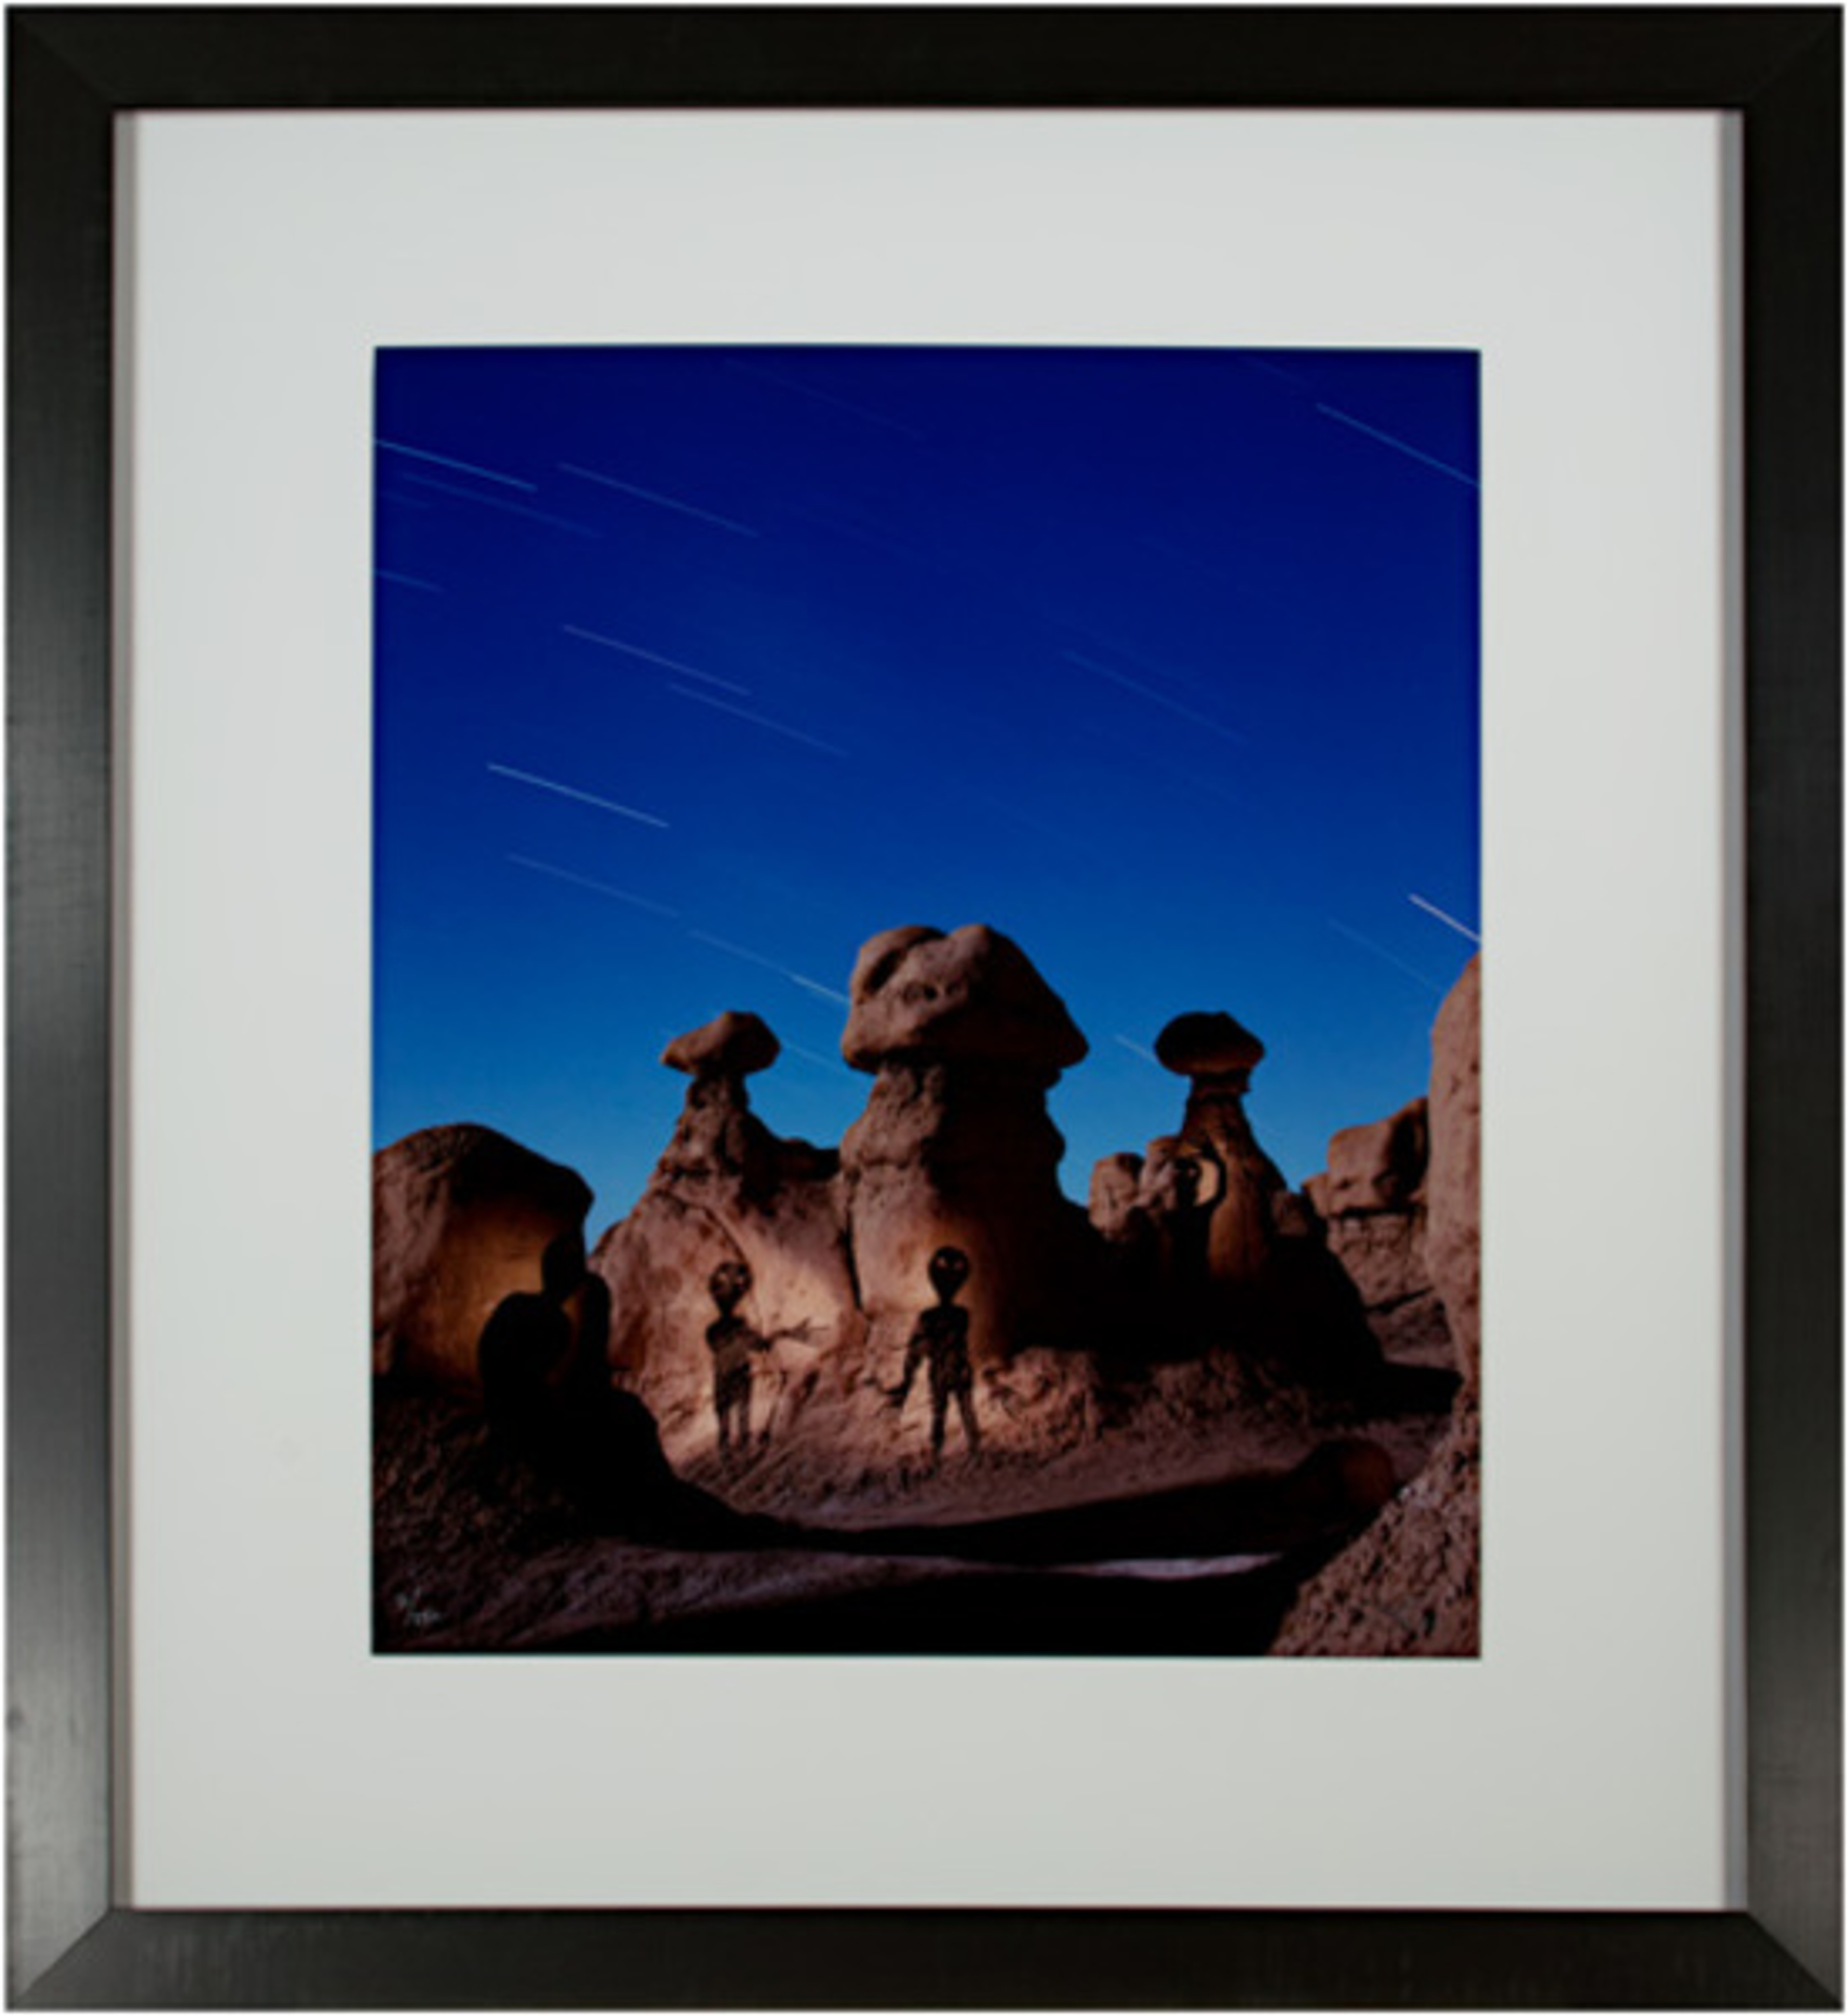 Aliens at Goblin Valley by Robert Kawika Sheer